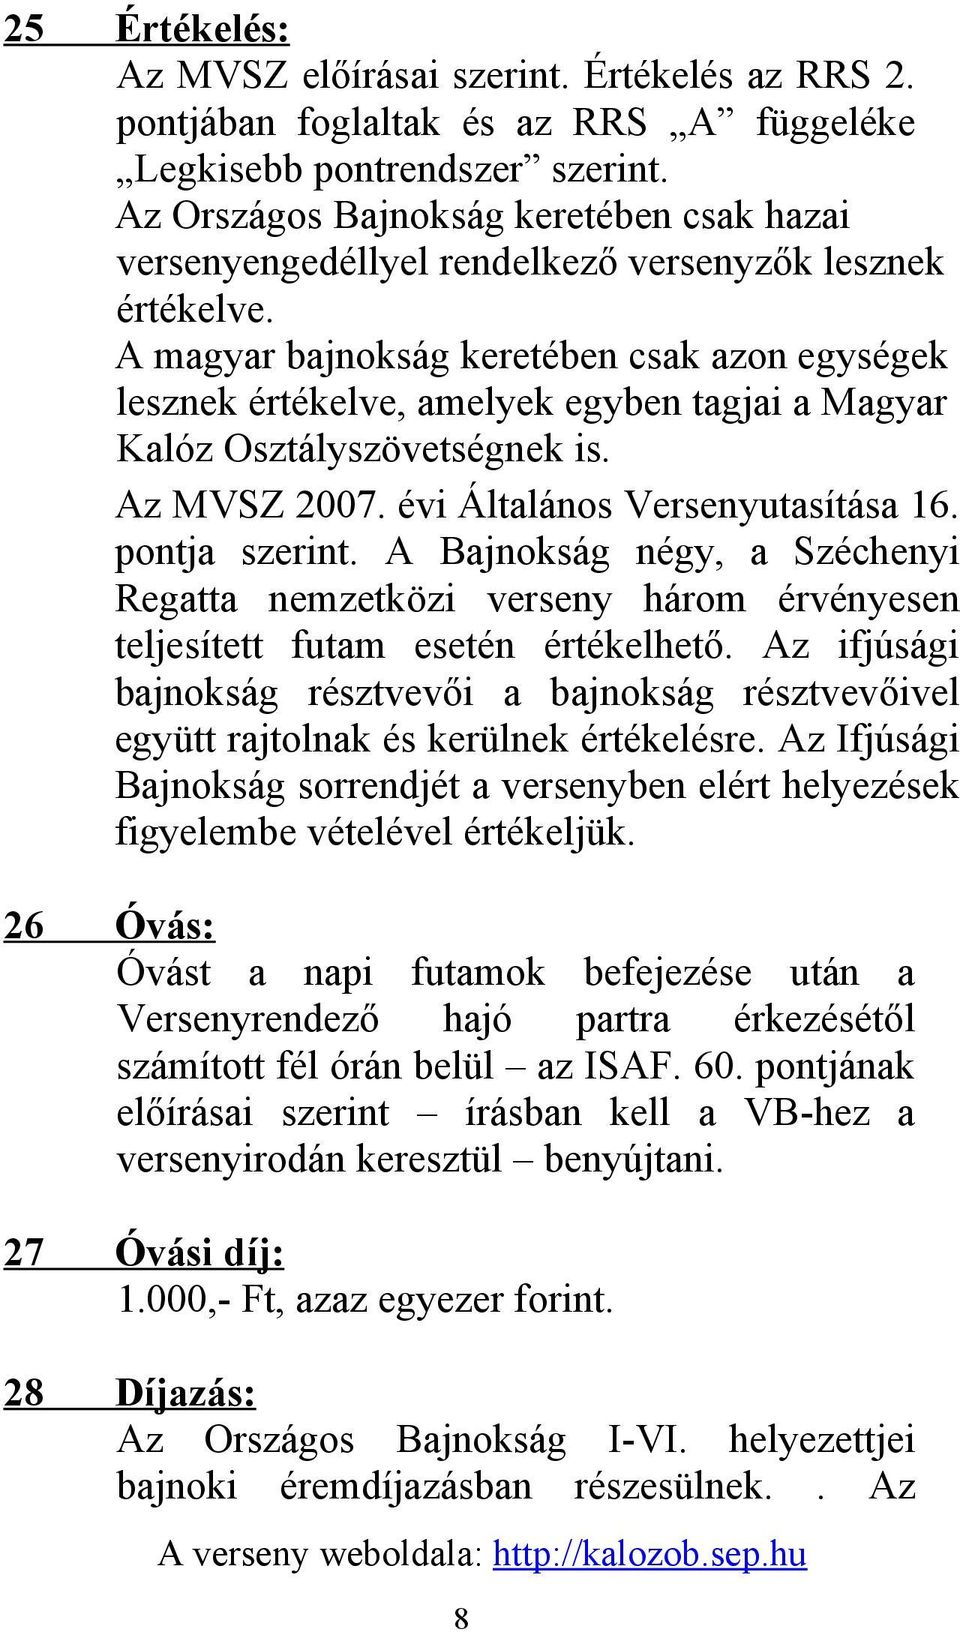 A magyar bajnokság keretében csak azon egységek lesznek értékelve, amelyek egyben tagjai a Magyar Kalóz Osztályszövetségnek is. Az MVSZ 2007. évi Általános Versenyutasítása 16. pontja szerint.